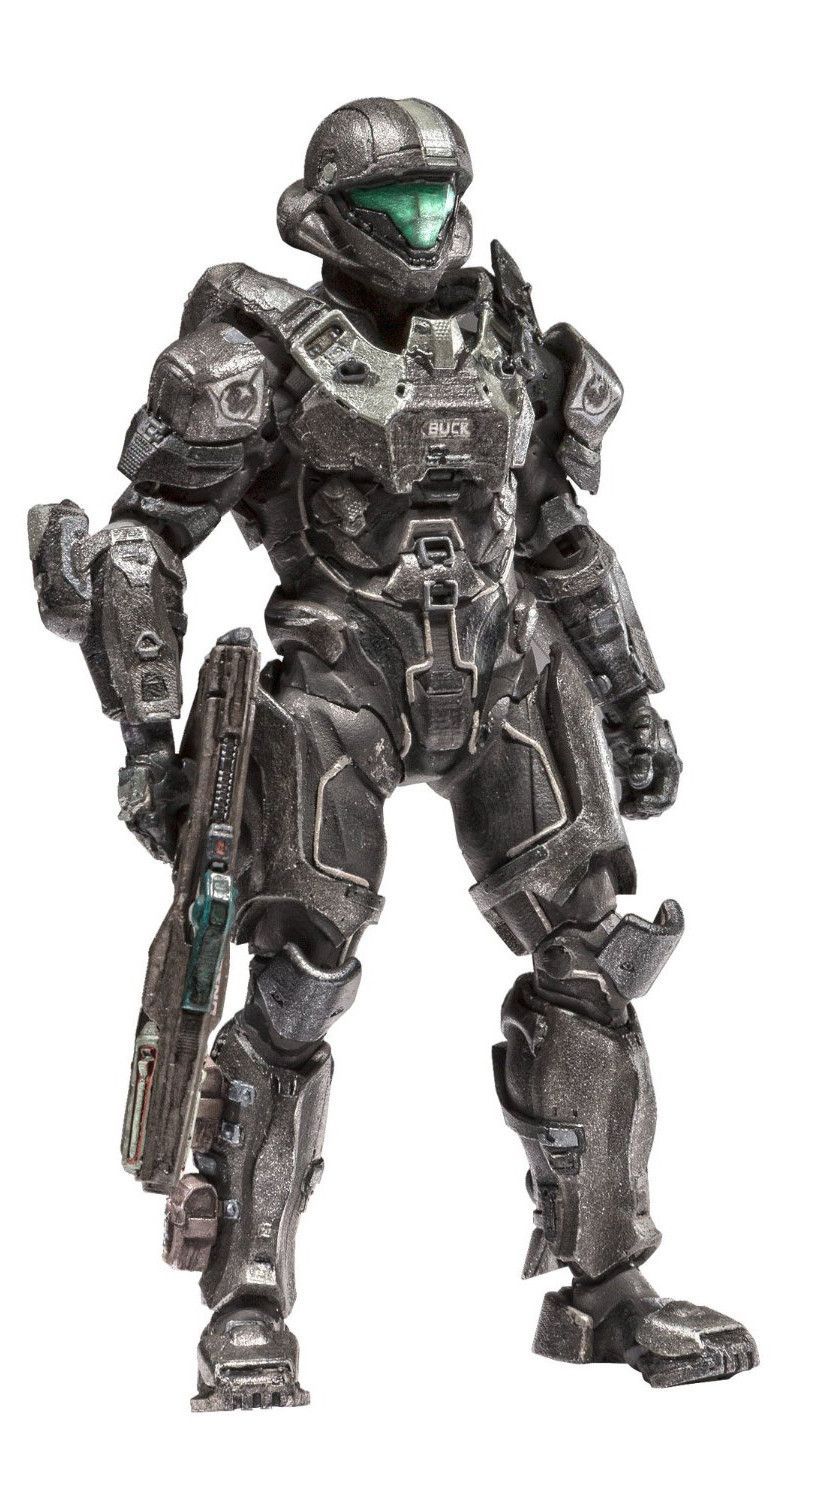 Halo 5 Guardians Series 2 Action Figure Spartan Buck. Halo armor, Halo spartan, Halo 5 guardians